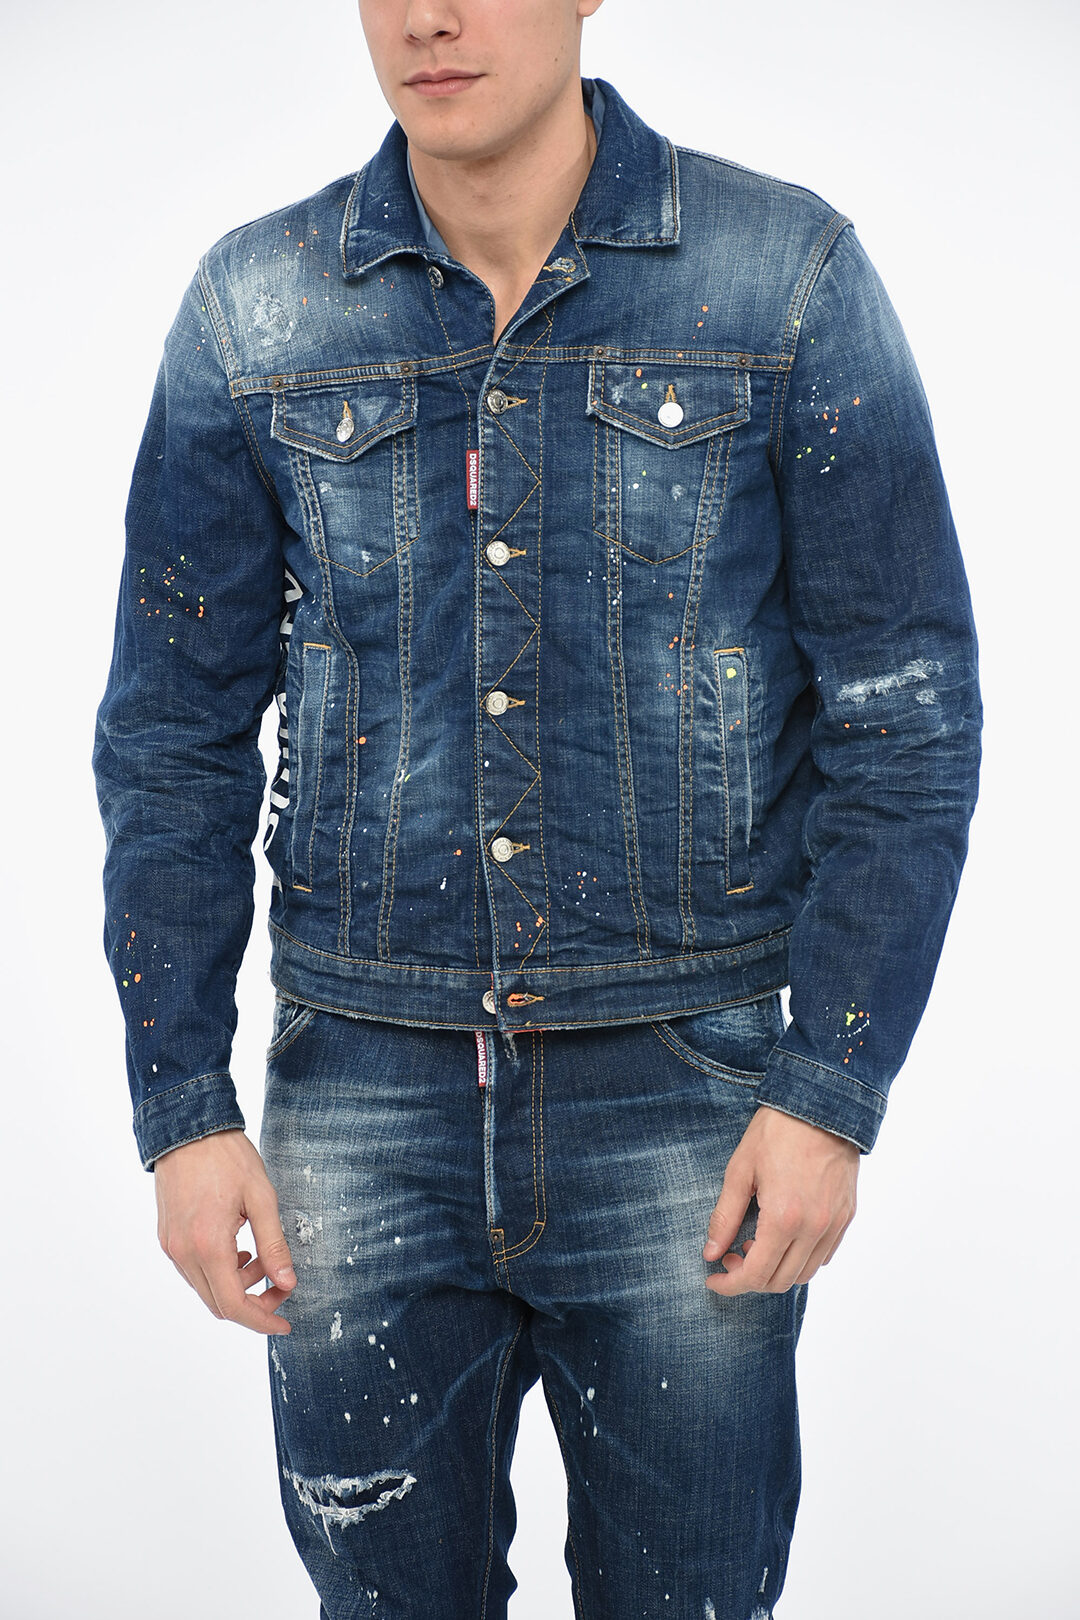 Blue Distressed Denim Jacket - Men's Coats & Jackets - Clothing - TOPMAN | Distressed  denim jacket mens, Distressed denim jacket, Jackets